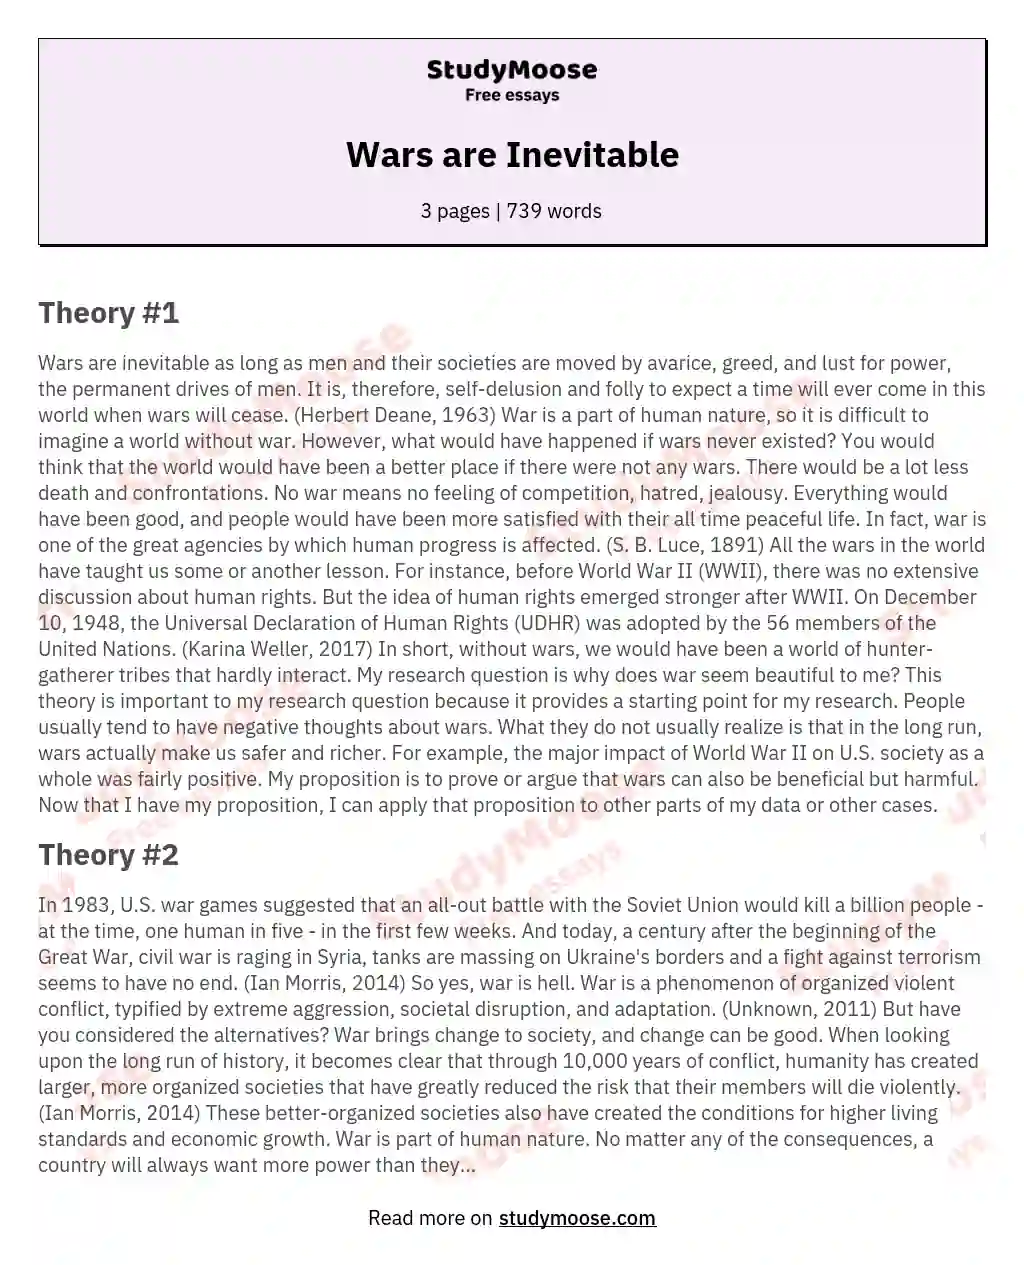 Wars are Inevitable essay